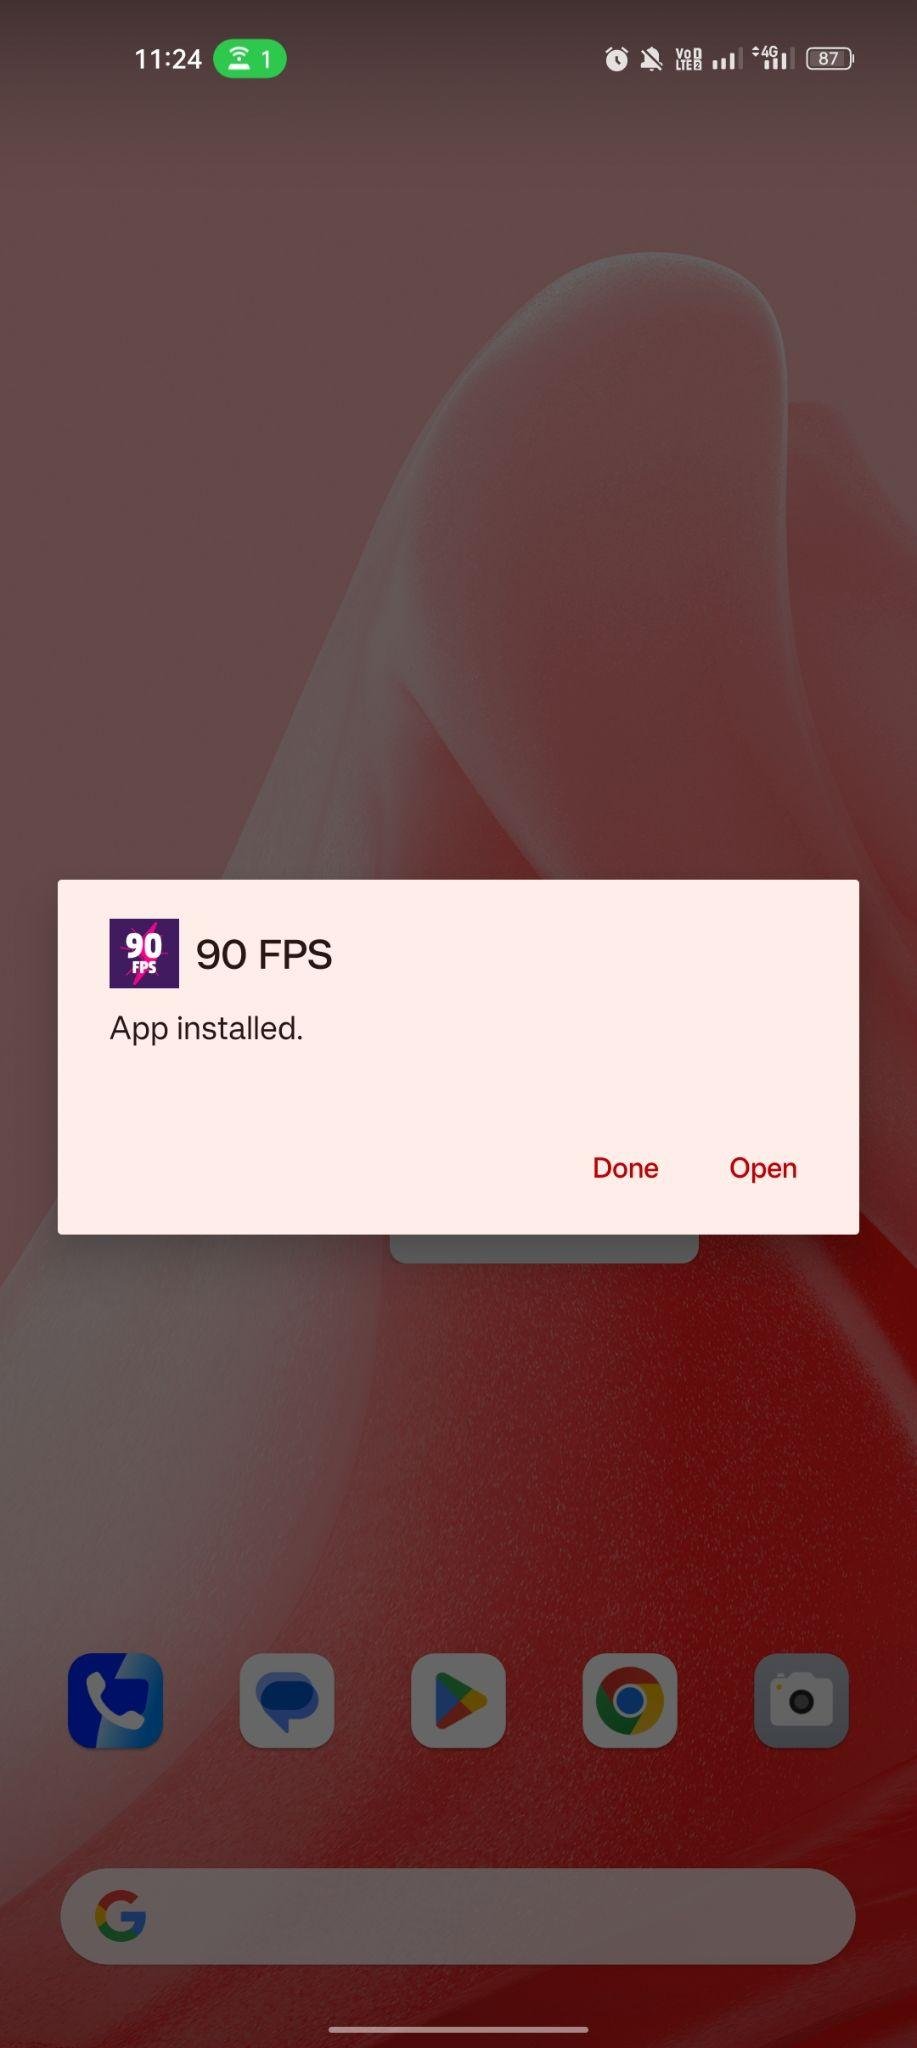 90 FPS apk installed